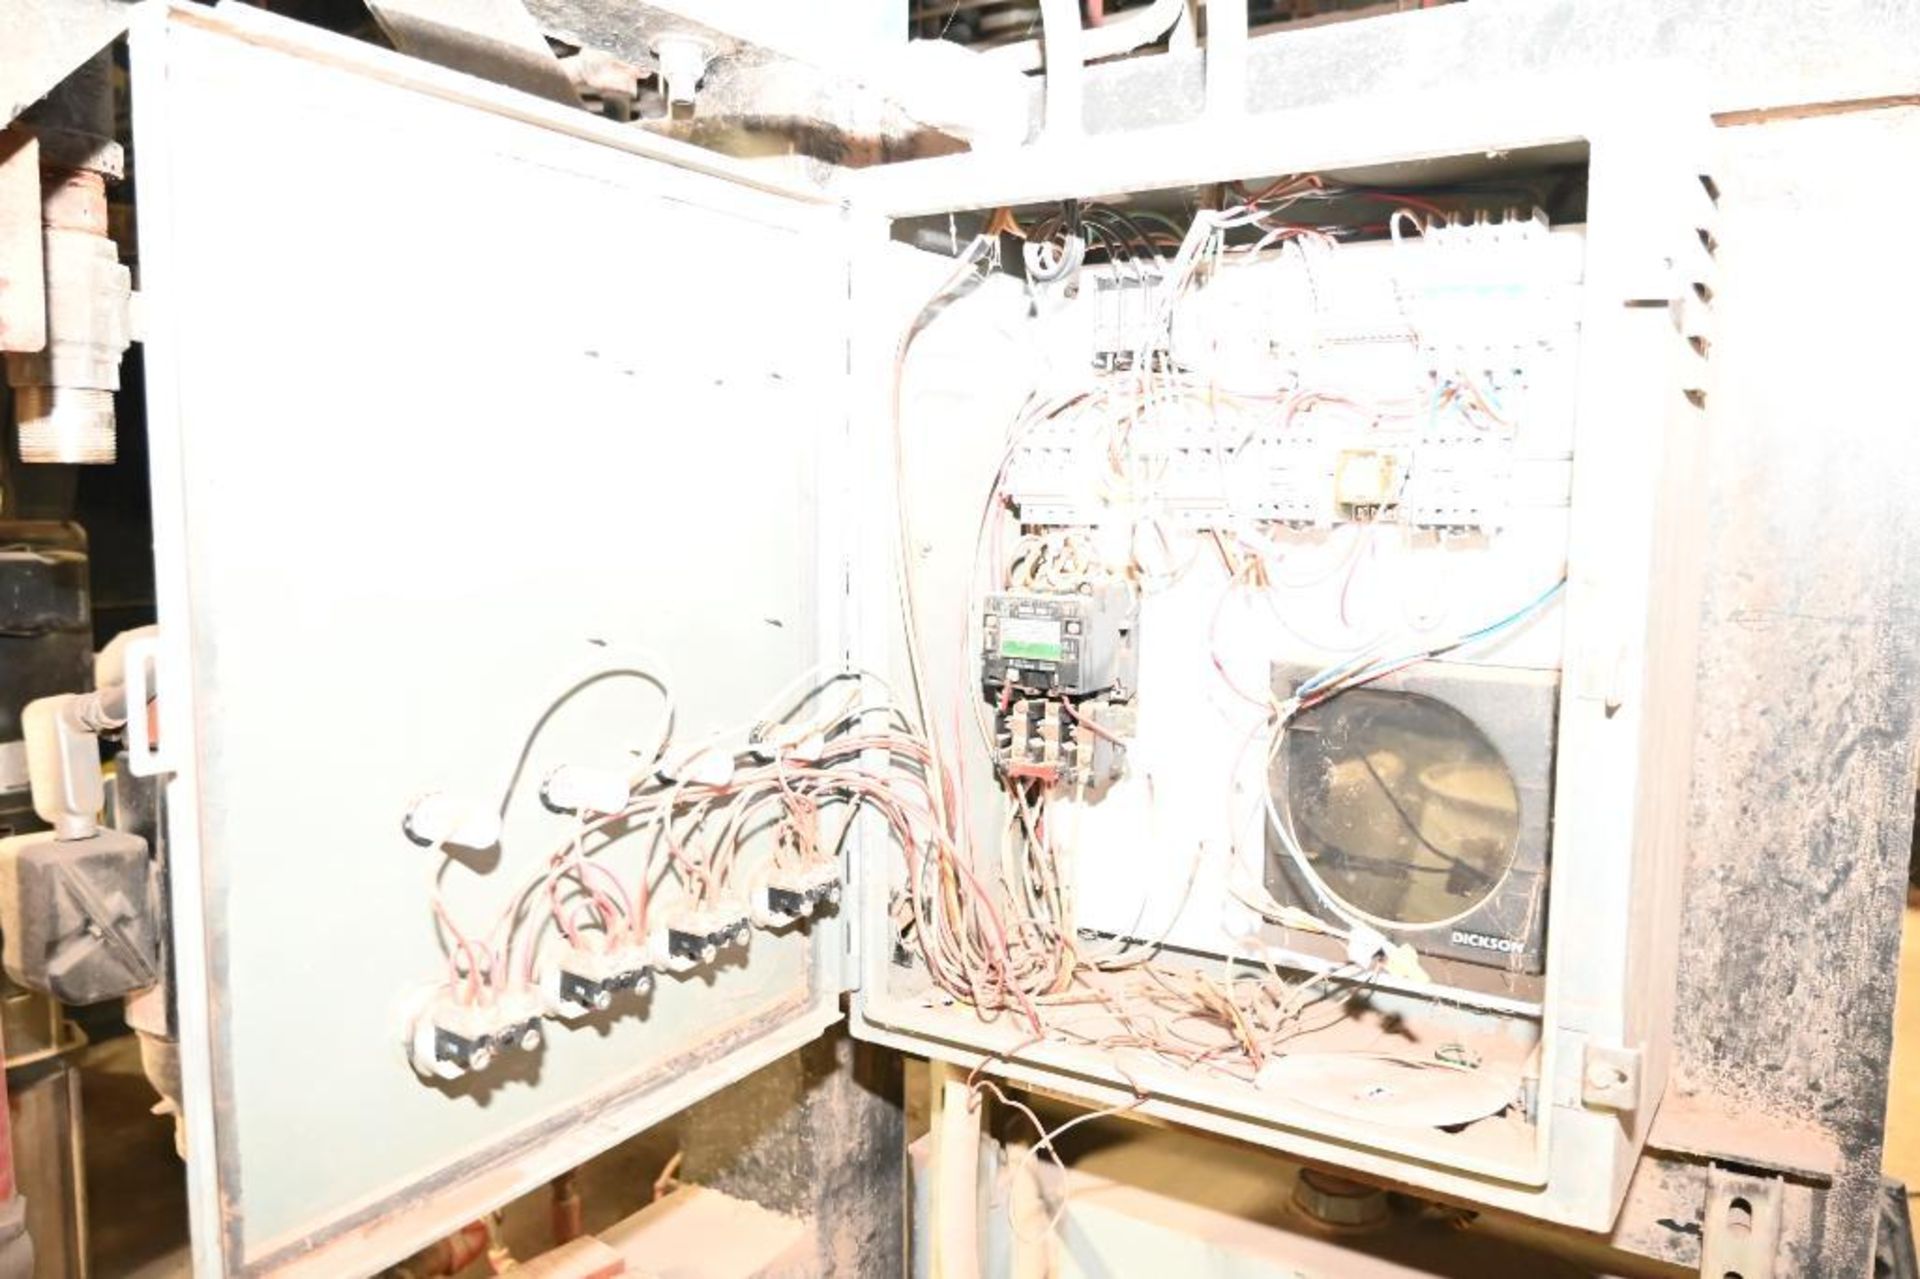 1996 Hurst Boiler System - Image 147 of 271